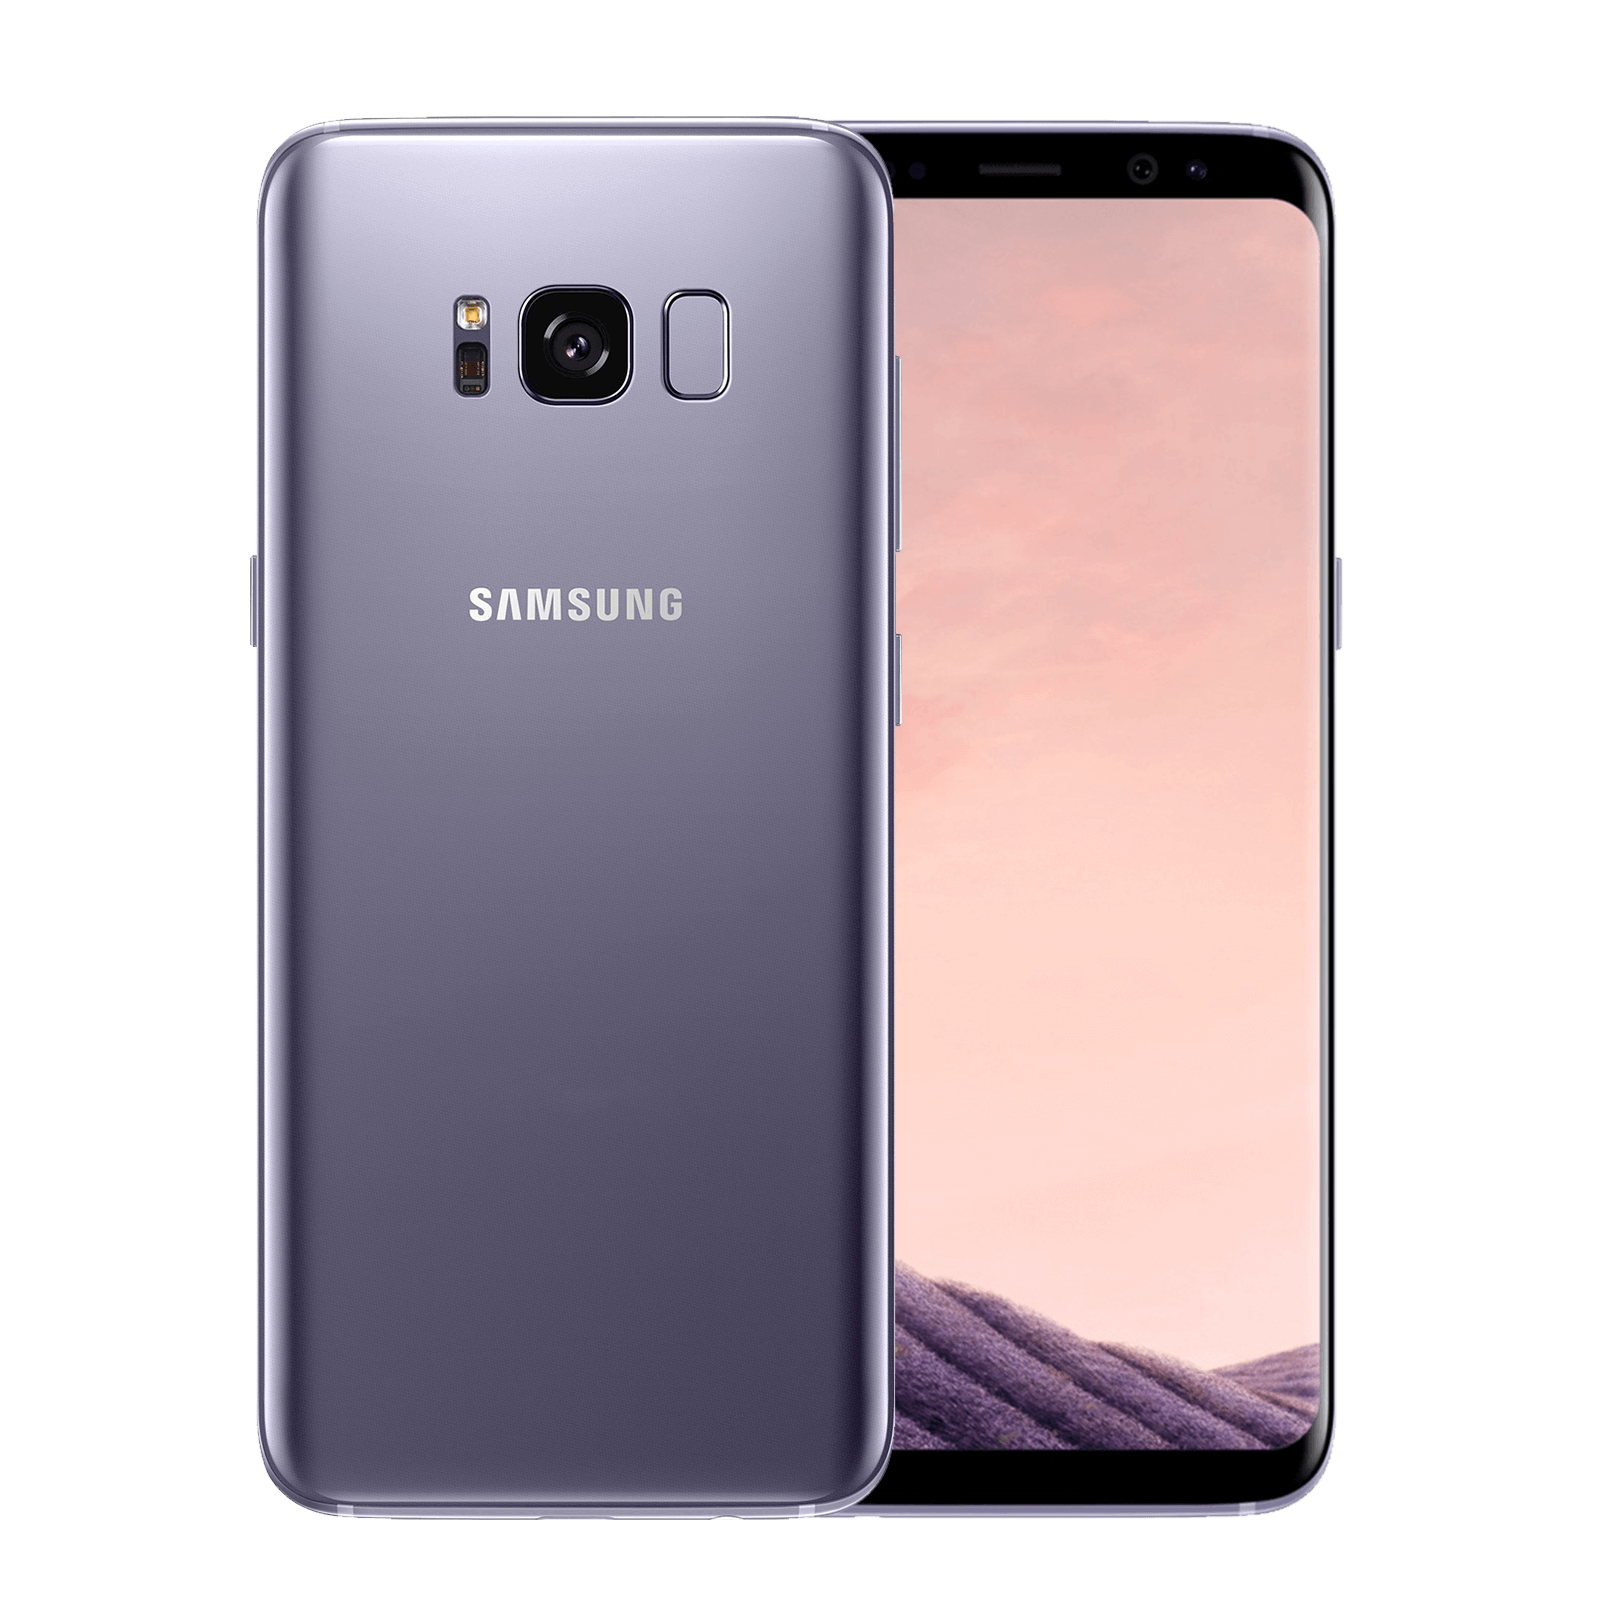 Samsung Galaxy S8 64GB Grey Very good - Unlocked